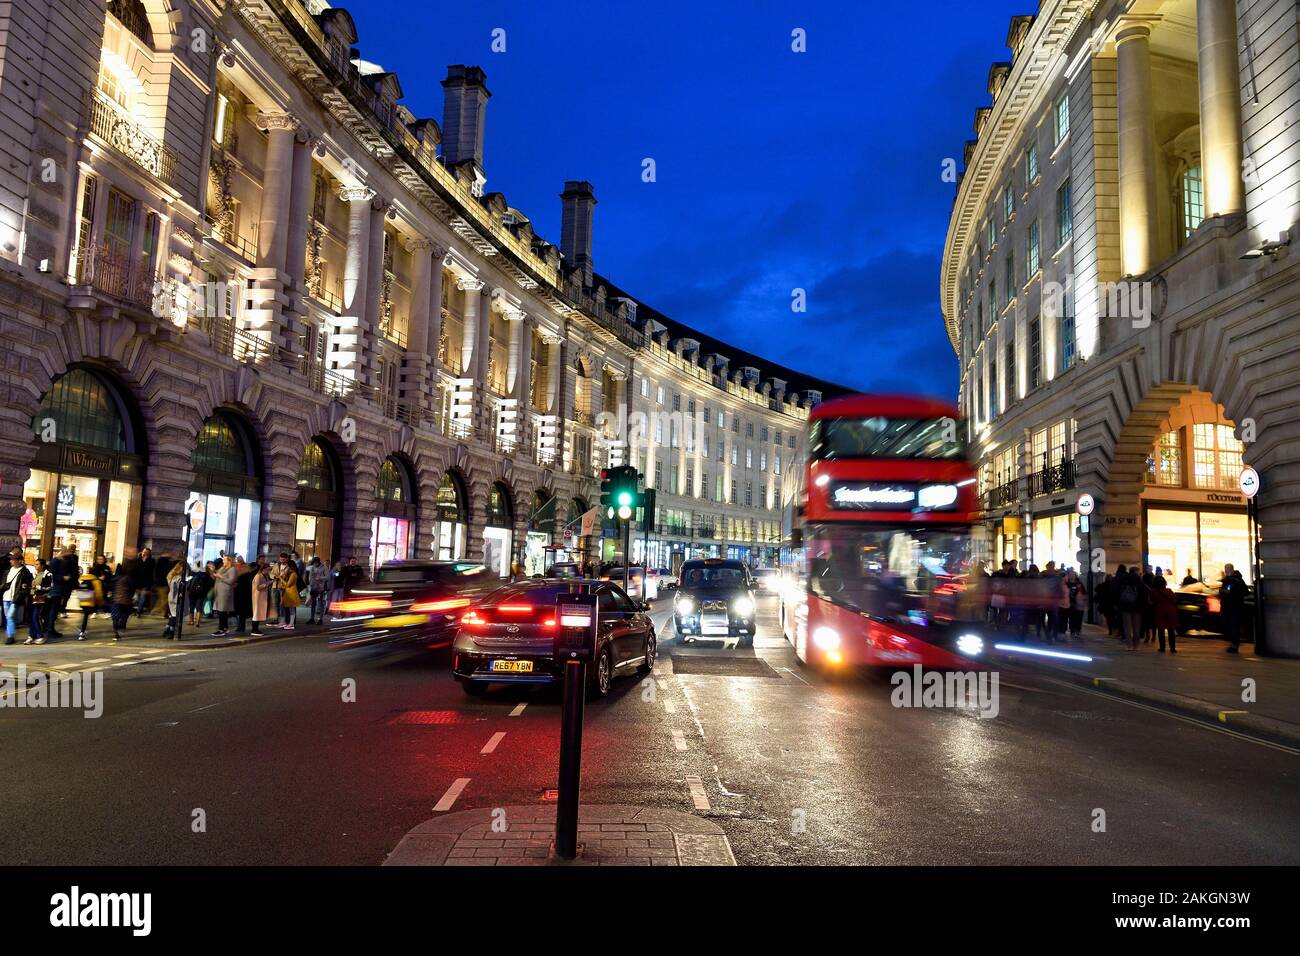 Royaume-uni, Londres, Regent Street, bus à impériale rouge Banque D'Images